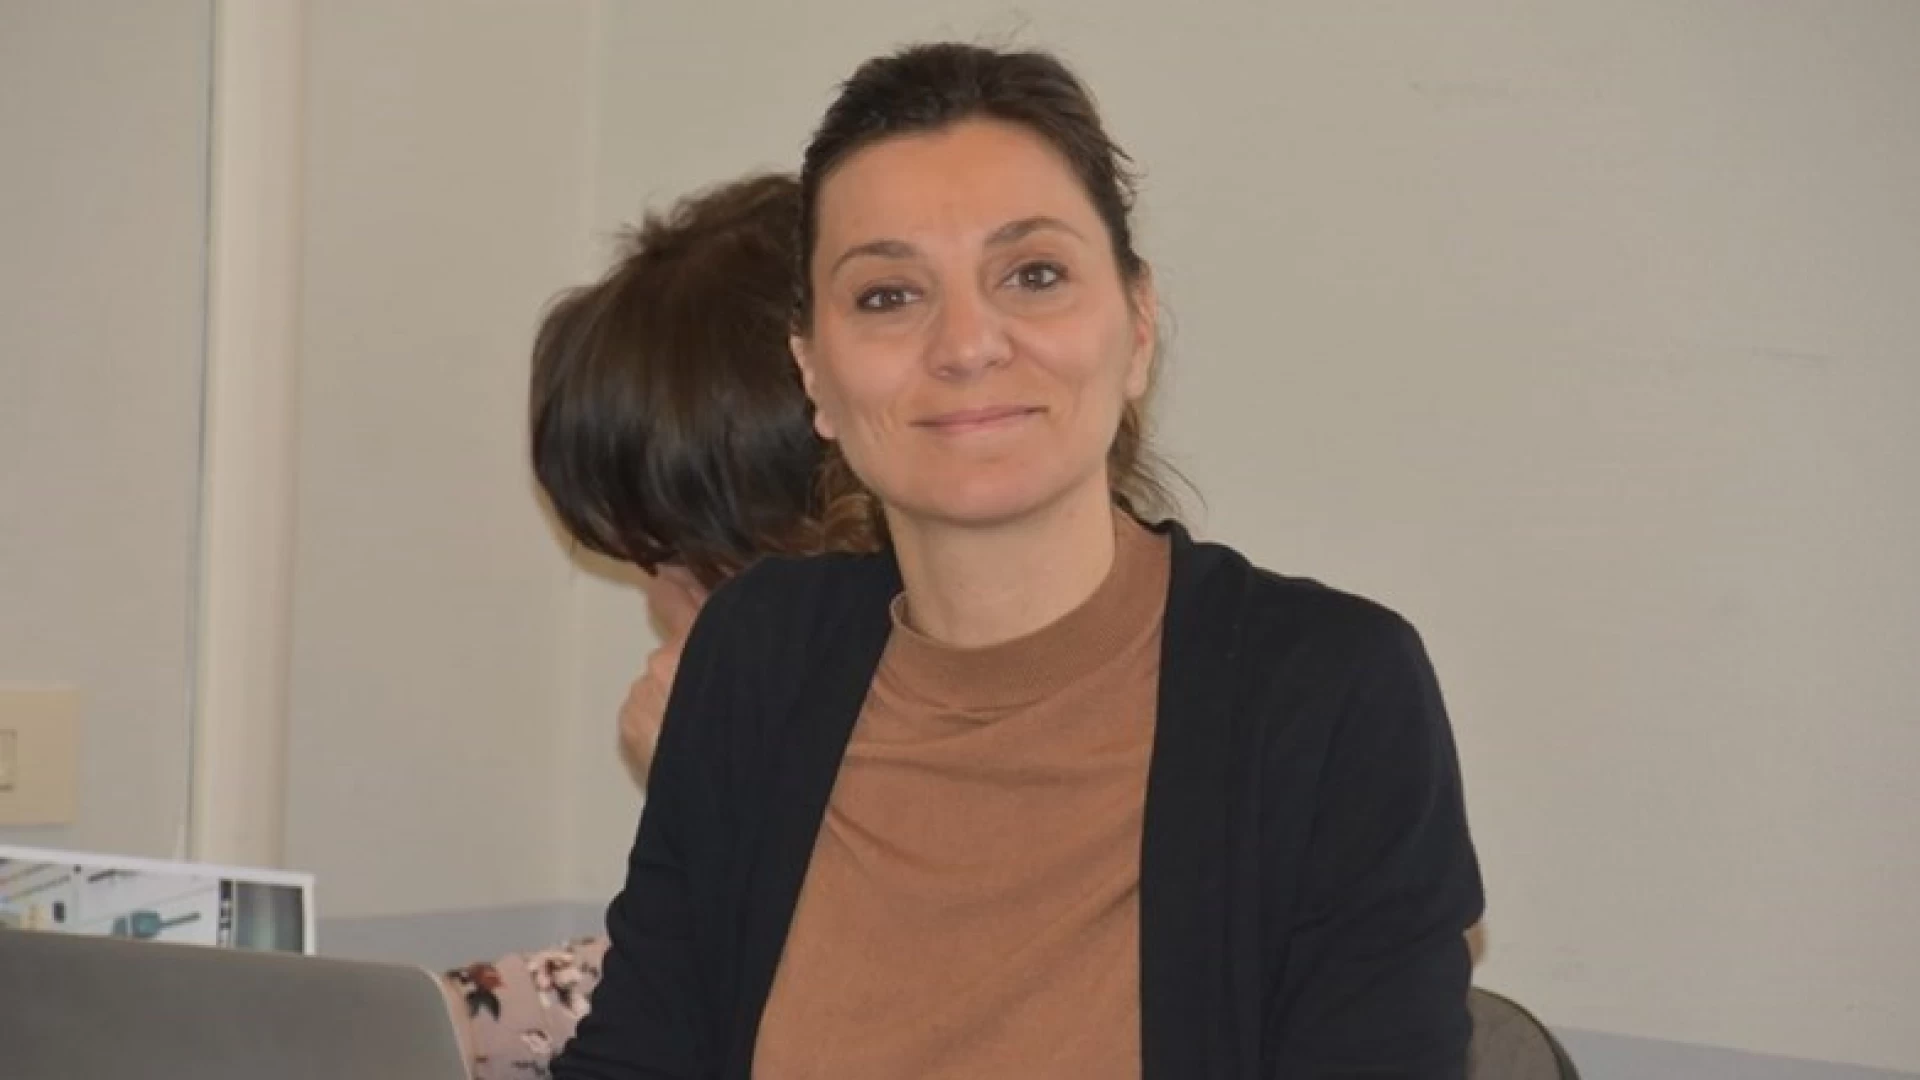 Gruppo uffici stampa dell’Asm, Valentina Fauzia è la nuova presidente.